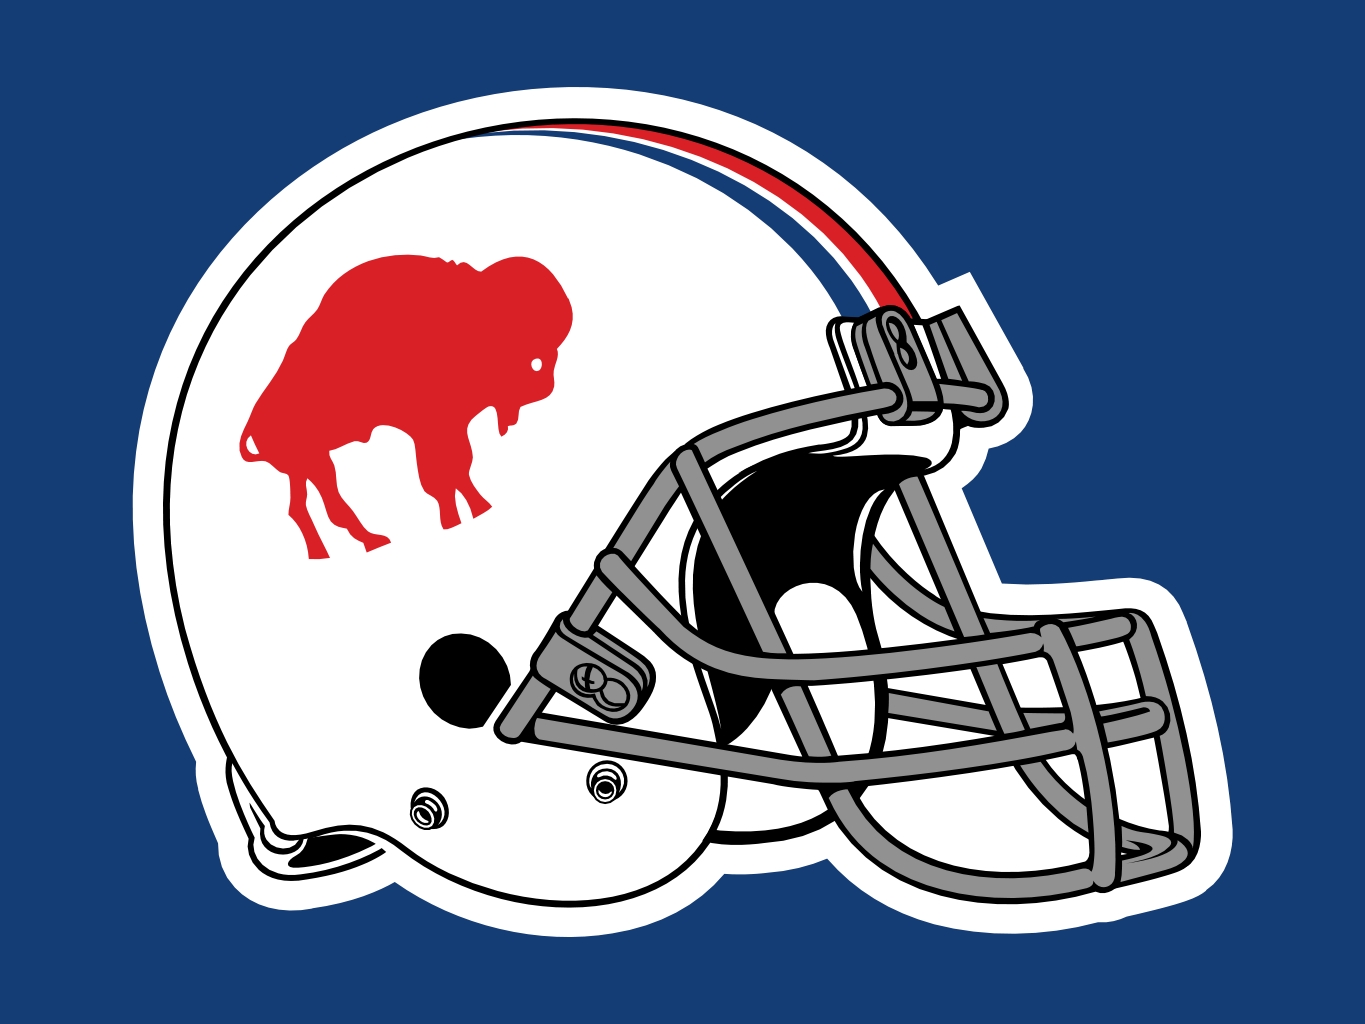 Buffalo Bills Very Old Helmet